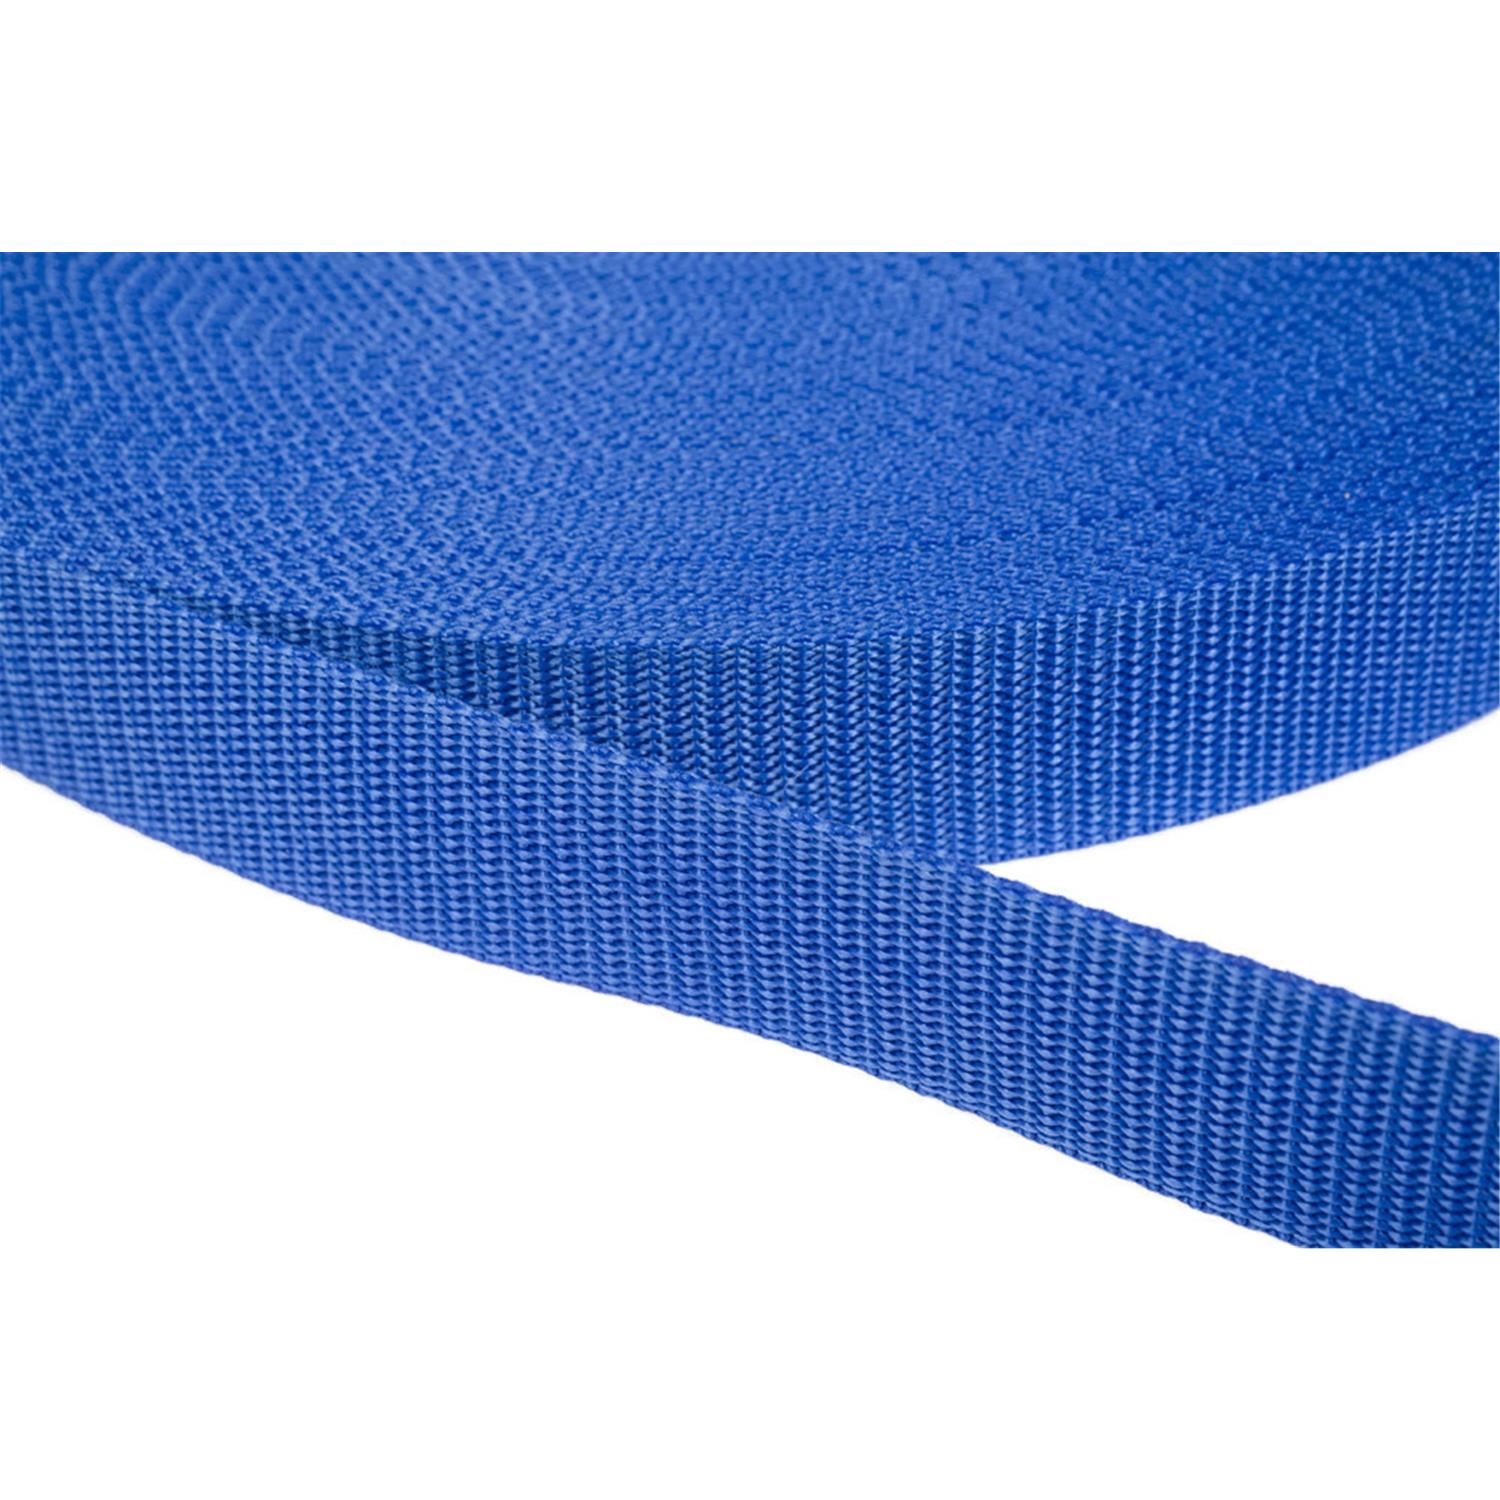 Gurtband 15mm breit aus Polypropylen in 41 Farben 26 - royalblau 12 Meter